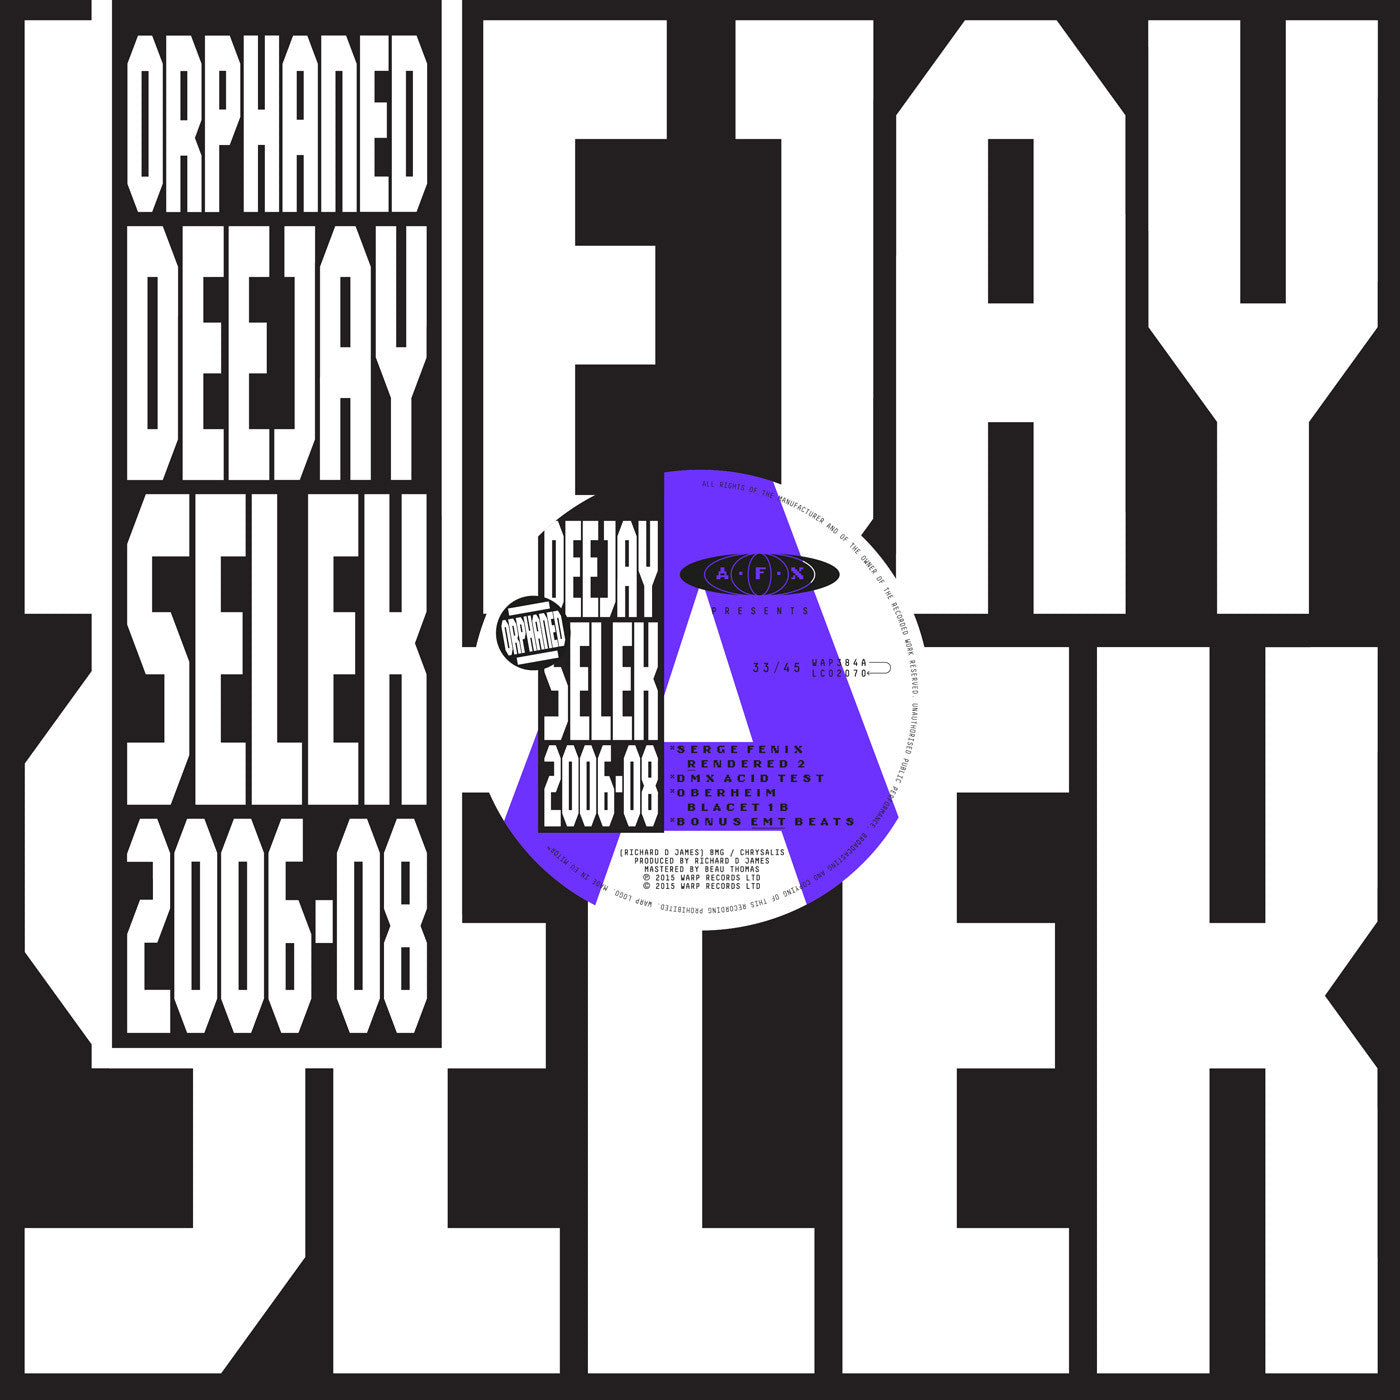 AFX ‎– Orphaned Deejay Selek 2006-08